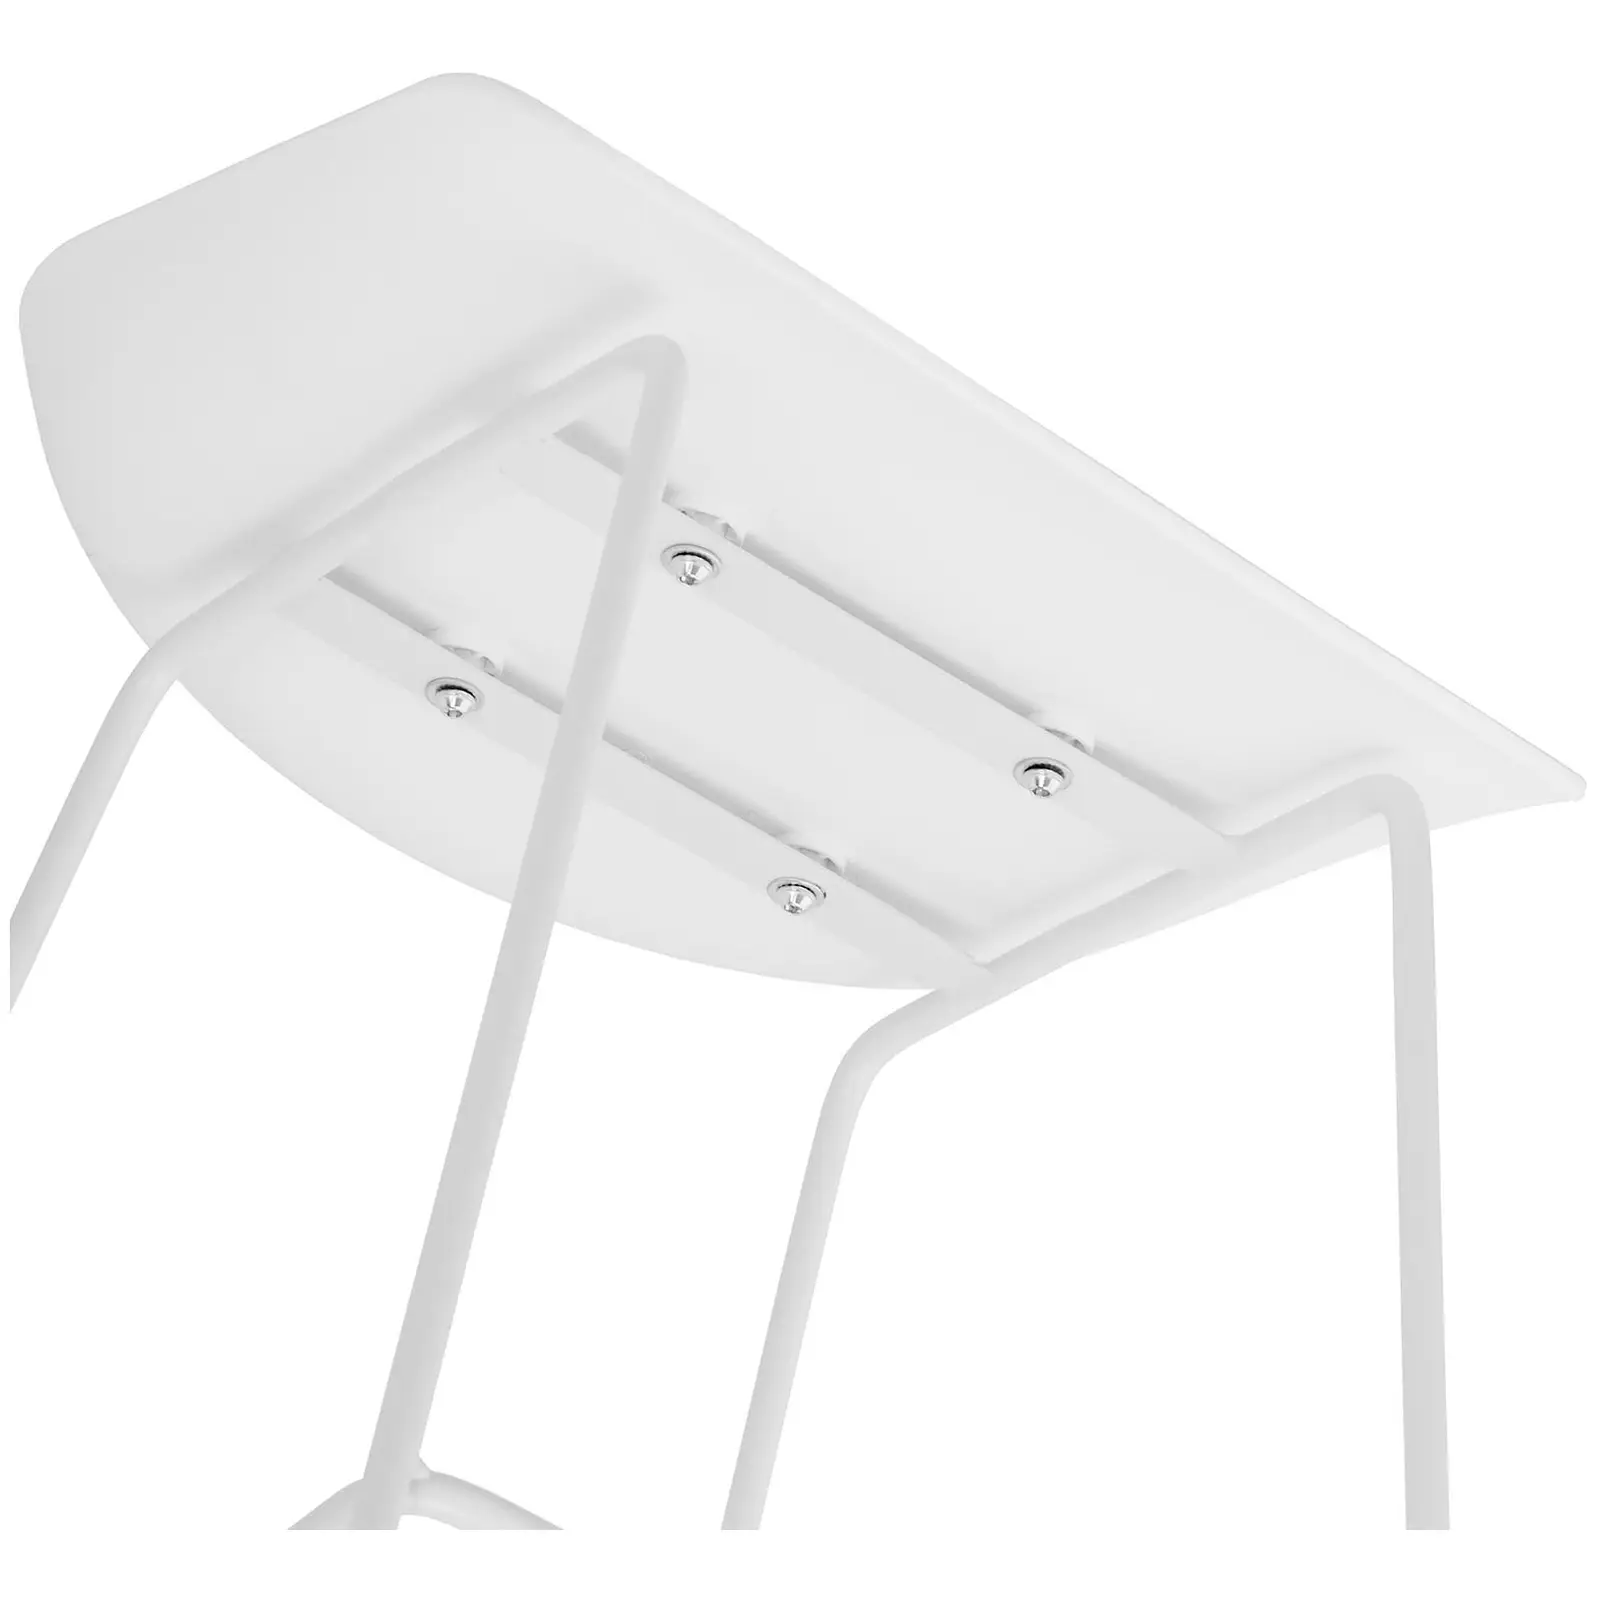 Barová stolička - 4dílná sada - až 150 kg - sedák 38 x 36 cm - bílá